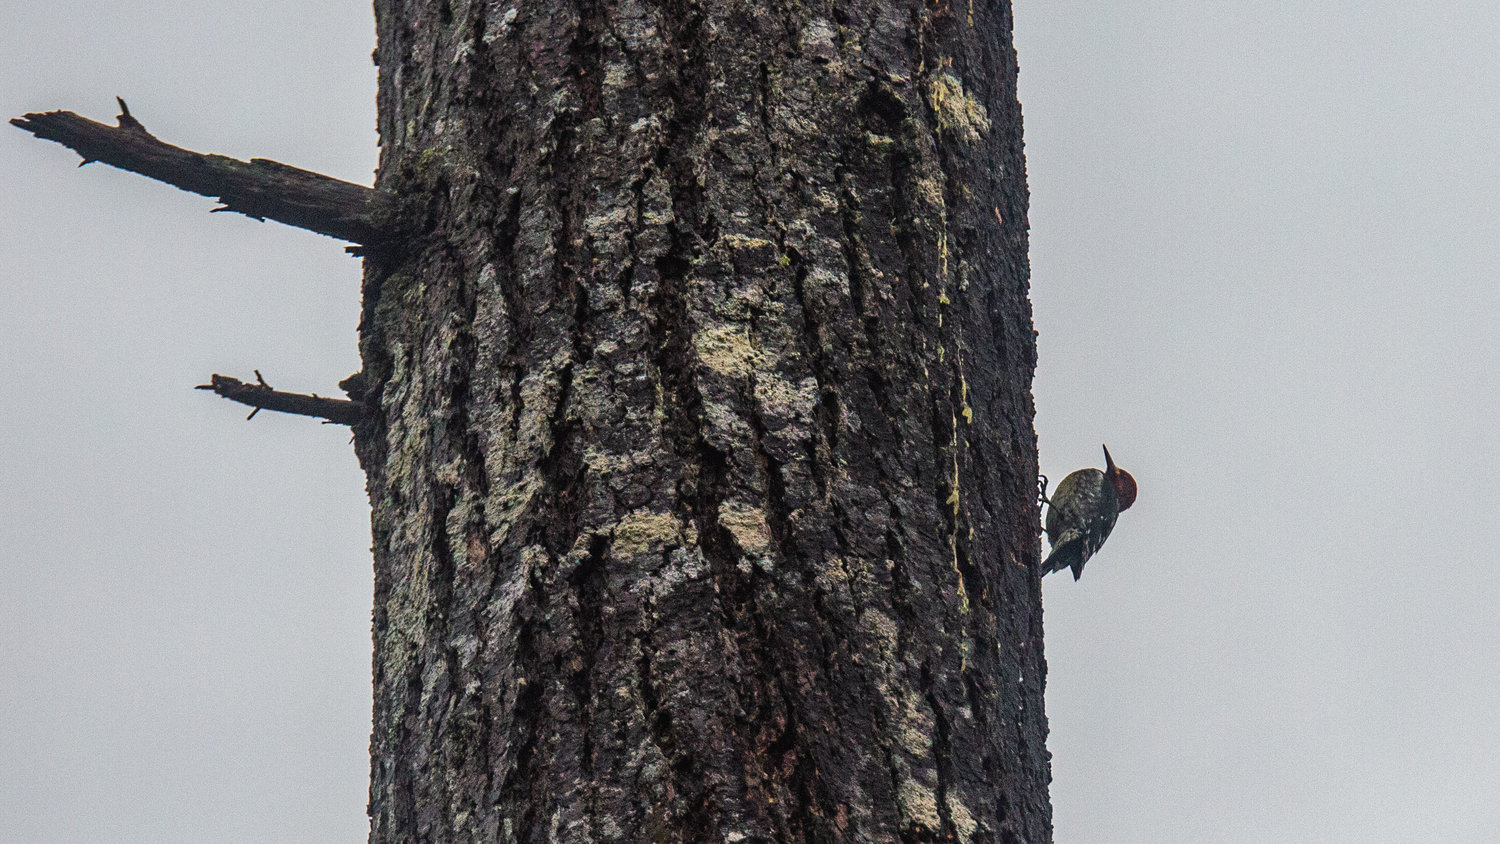 A woodpecker is seen on the side of a Douglas fir tree on Saturday morning near Boistfort.